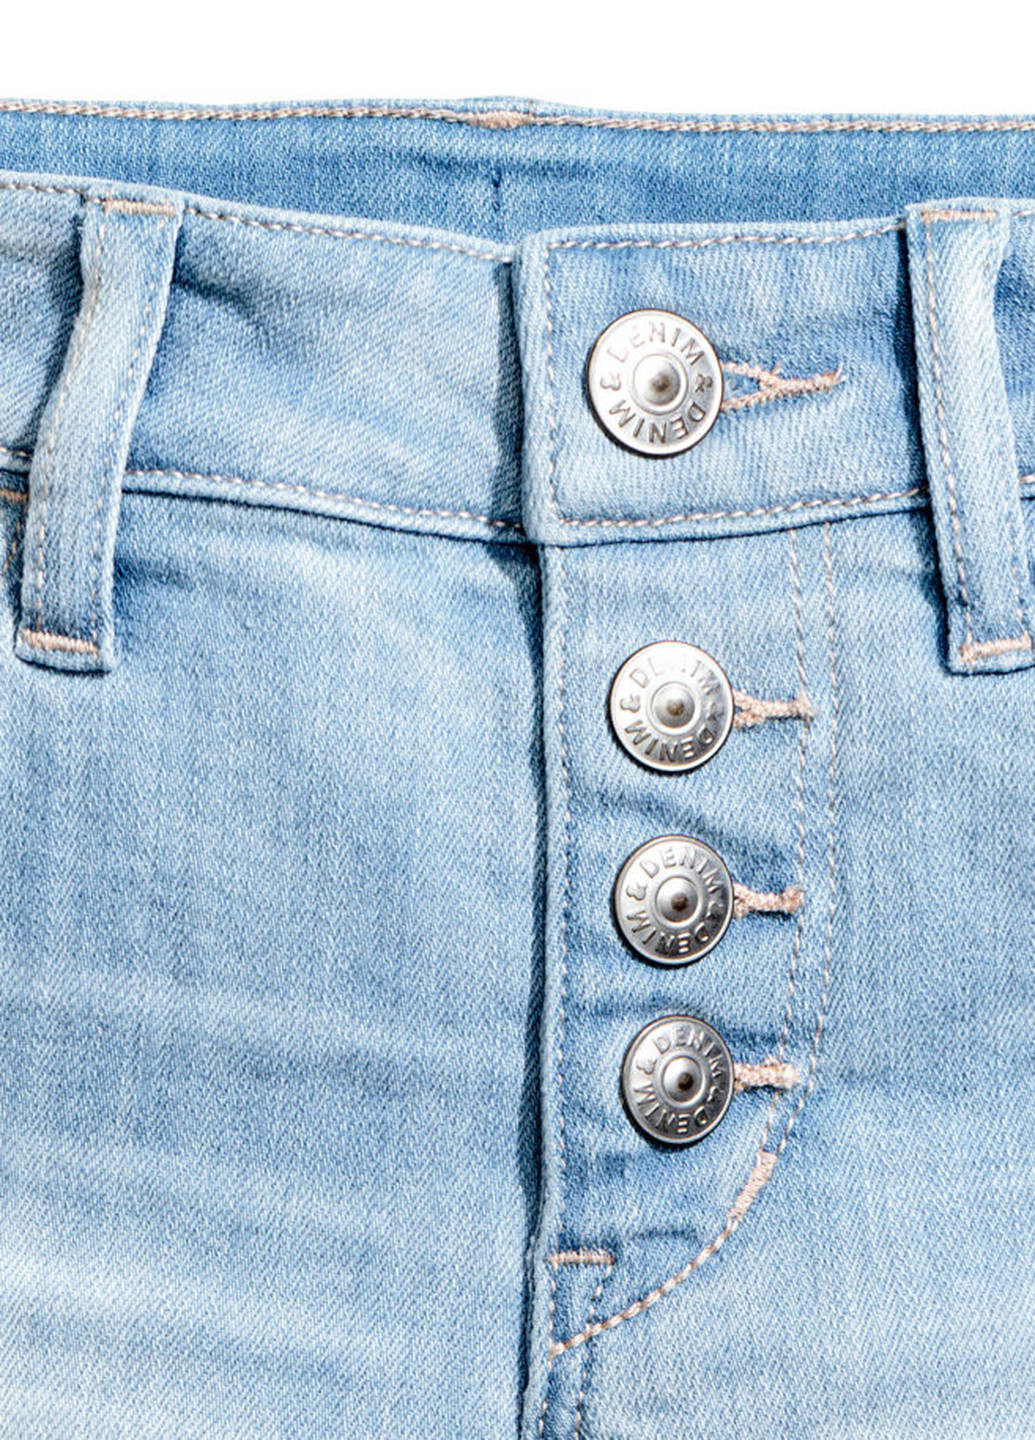 Шорты H&M средняя талия однотонные голубые джинсовые